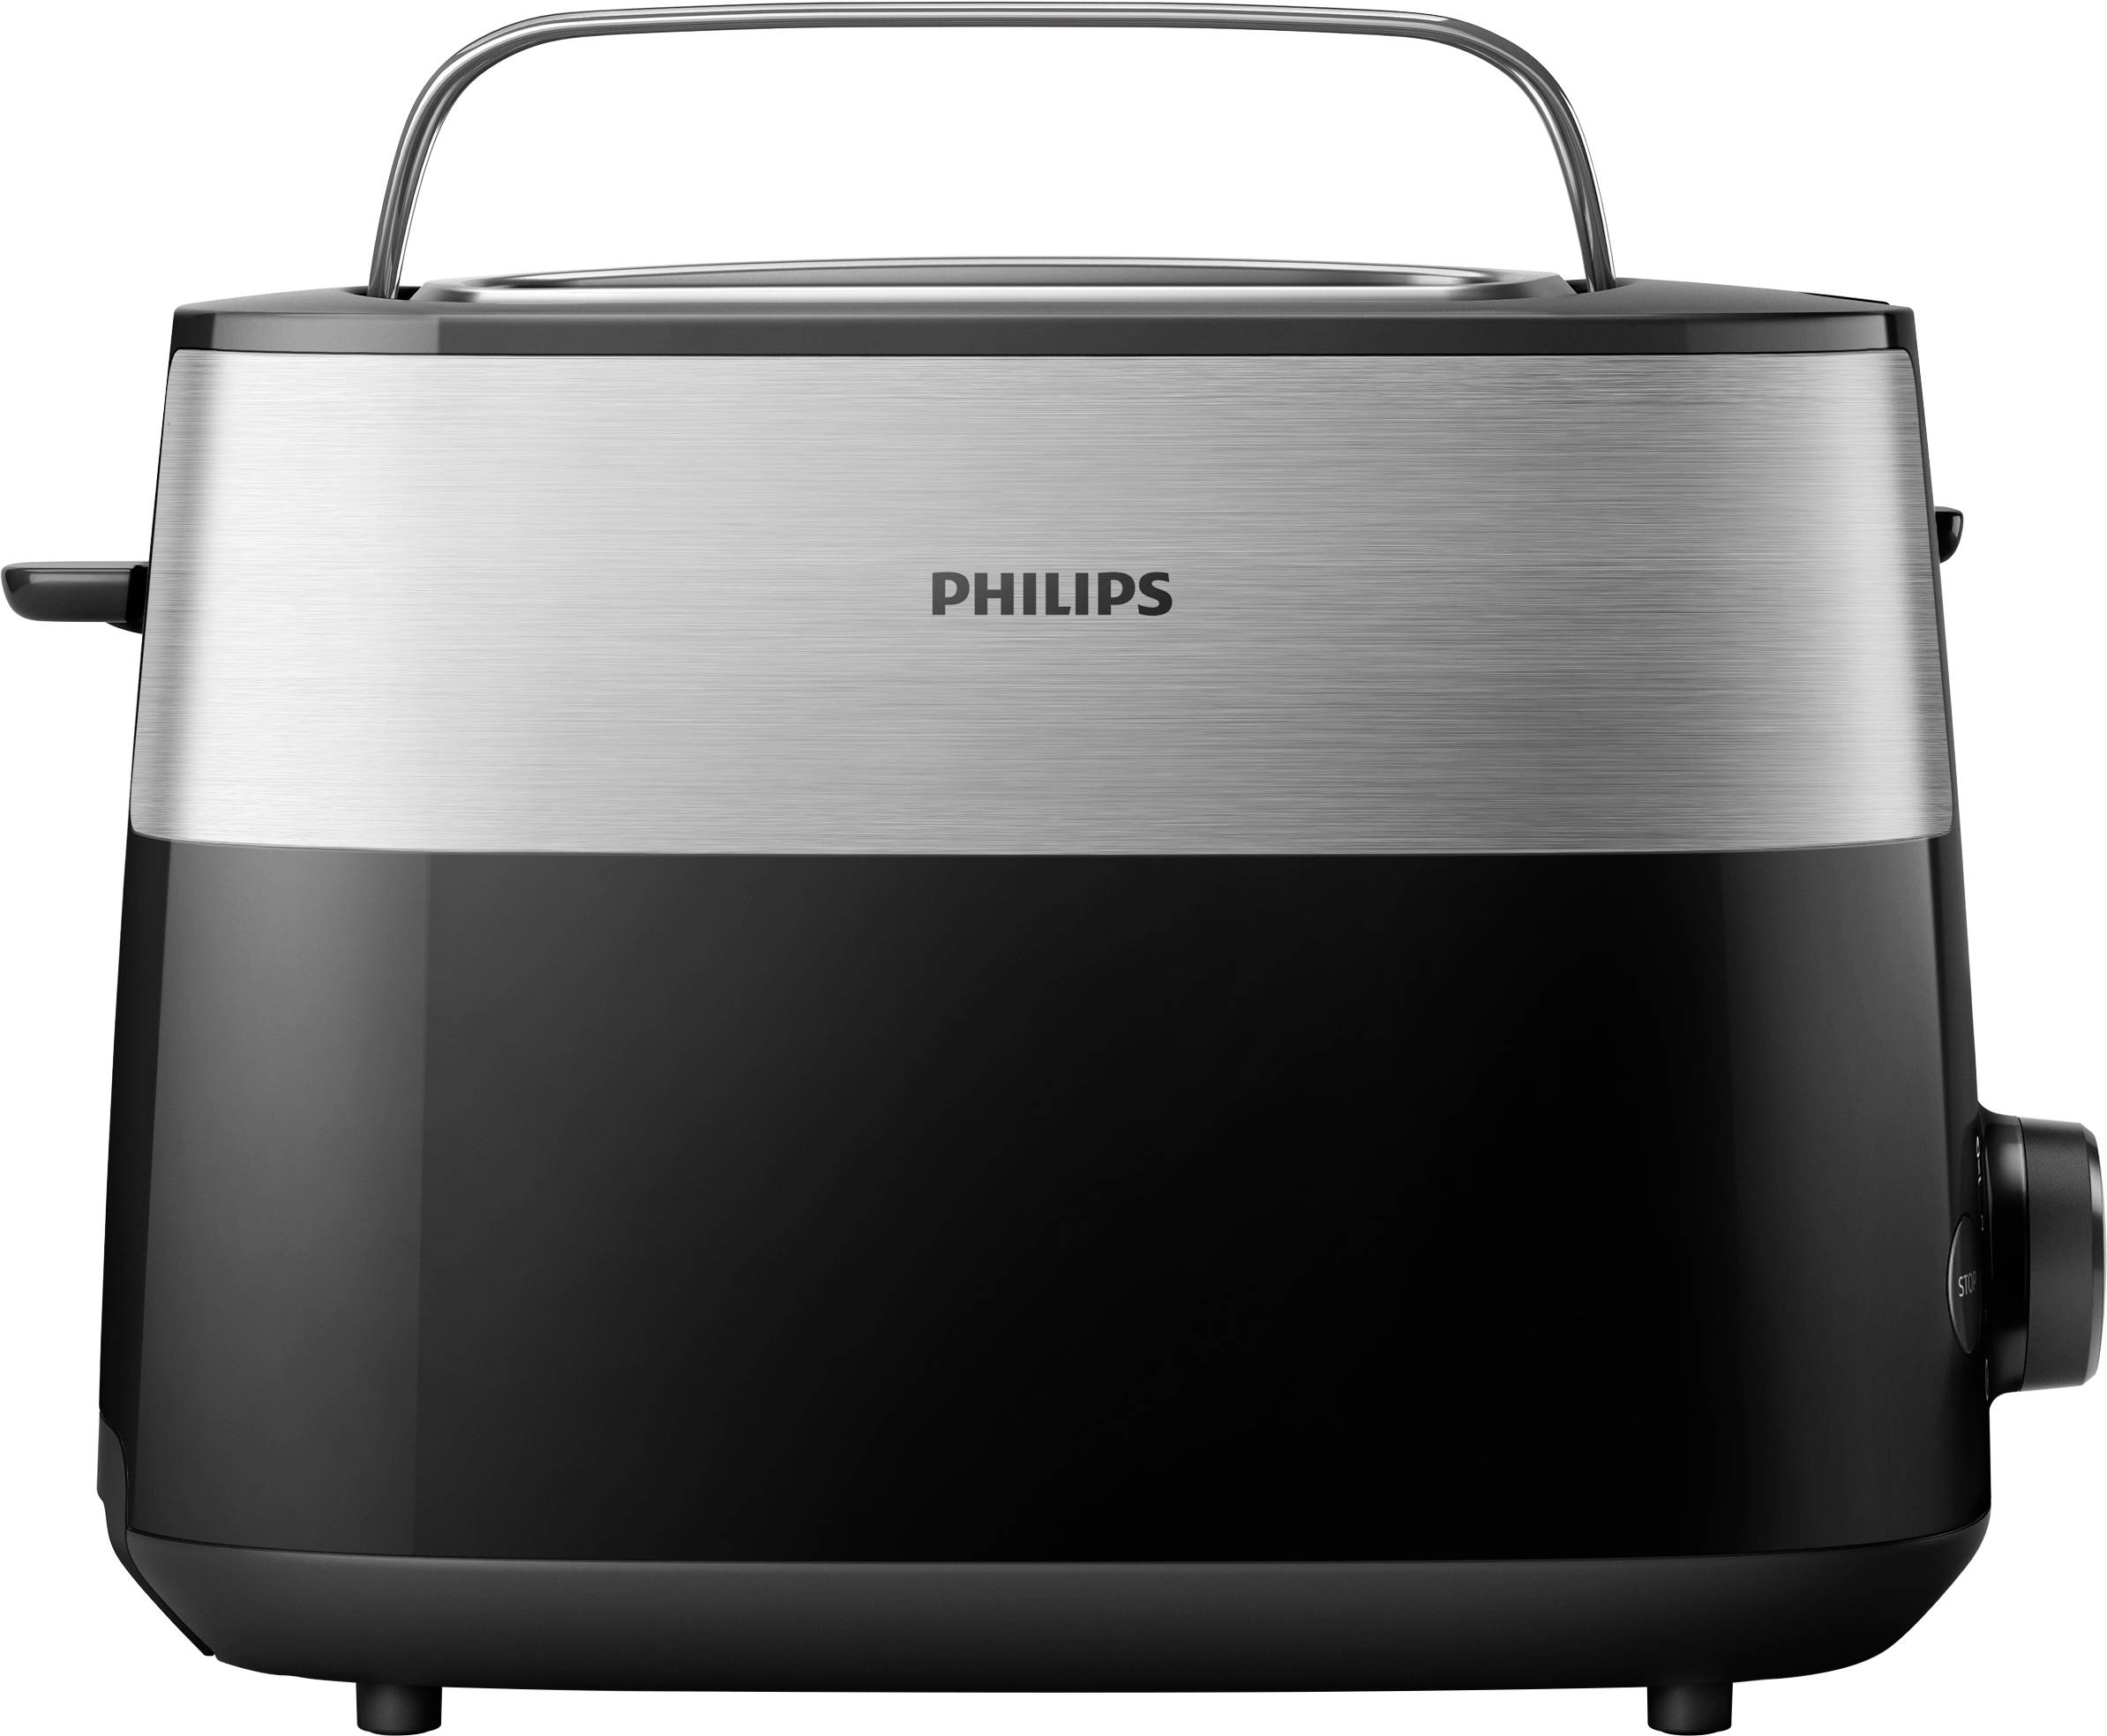 Acquista Philips HD2516/90 Daily Tostapane acciaio inox, Nero da Conrad